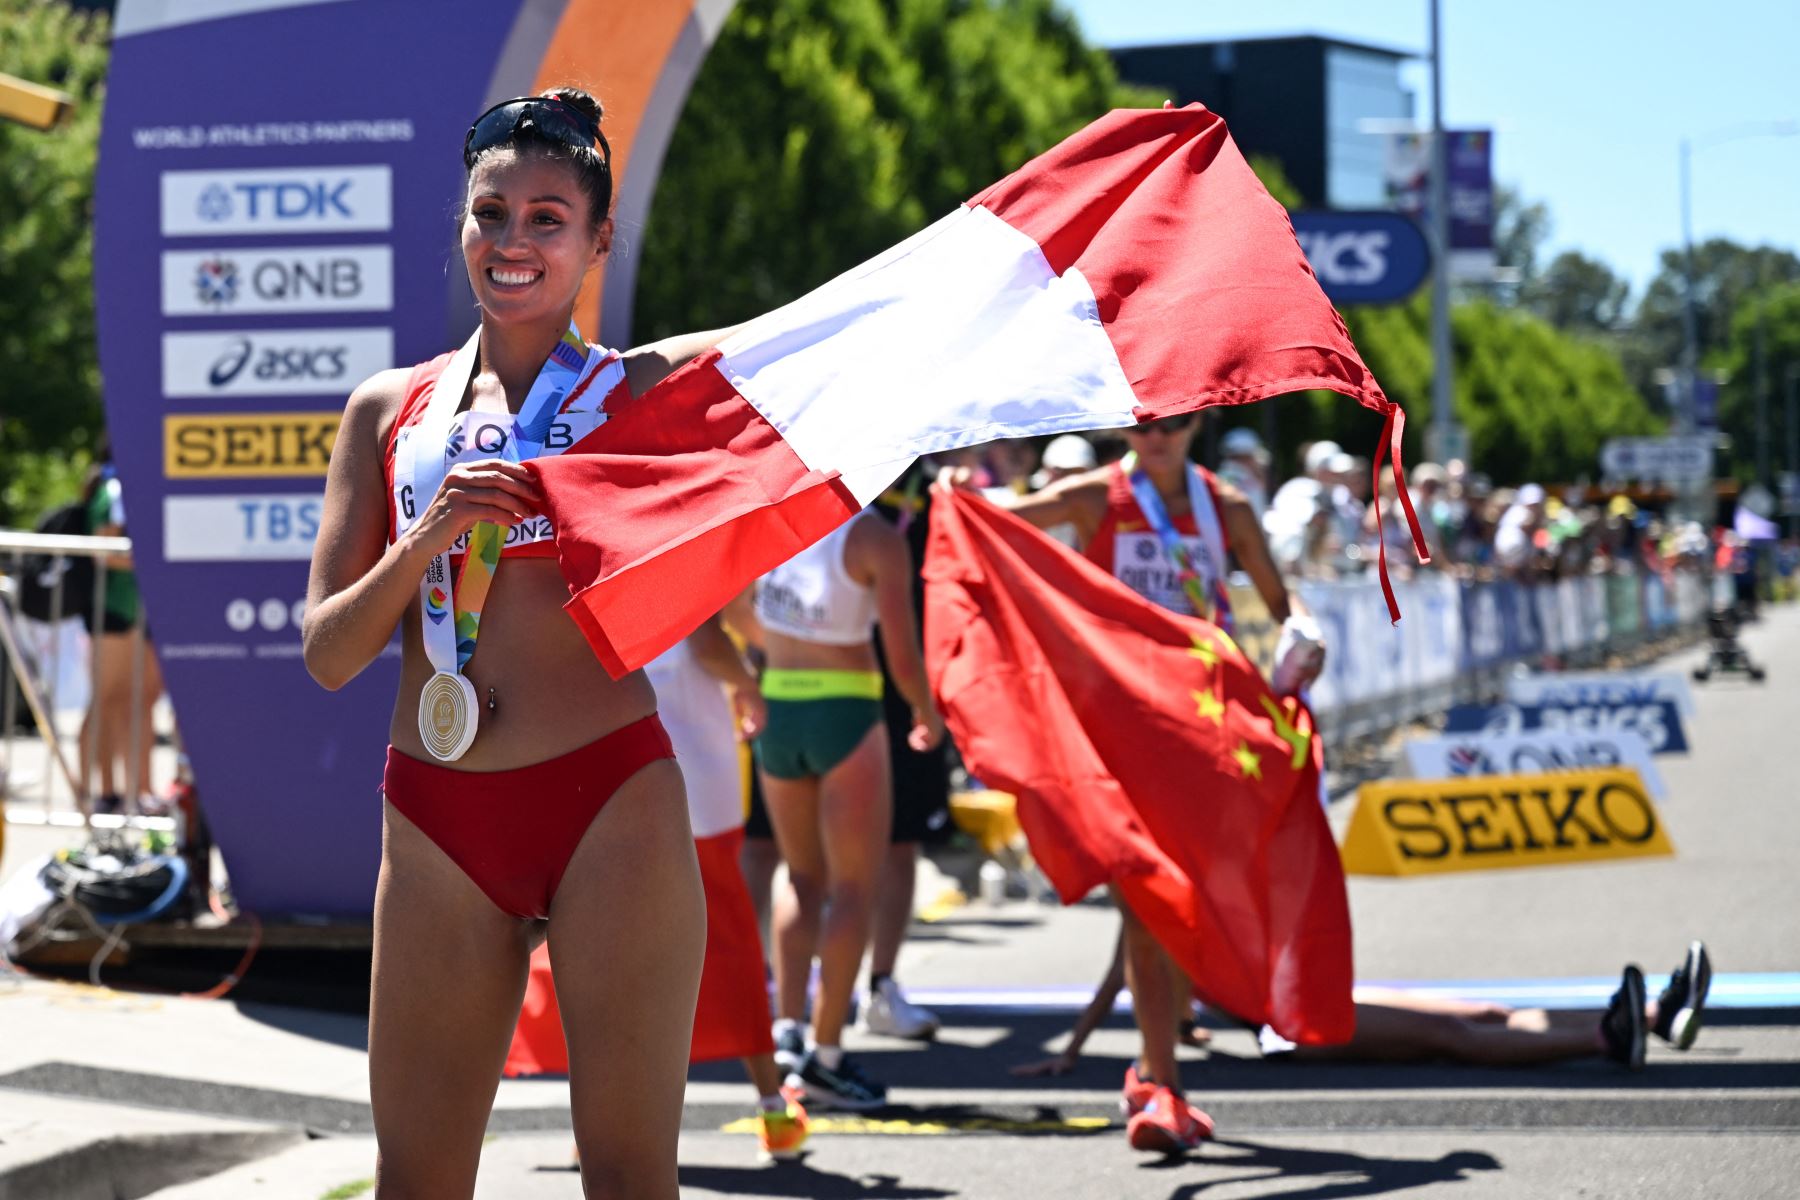 La peruana Kimberly García León celebra después de ganar la final de carrera de 20 km de mujeres durante el Campeonato Mundial de Atletismo en Eugene, Oregón.
Foto: AFP